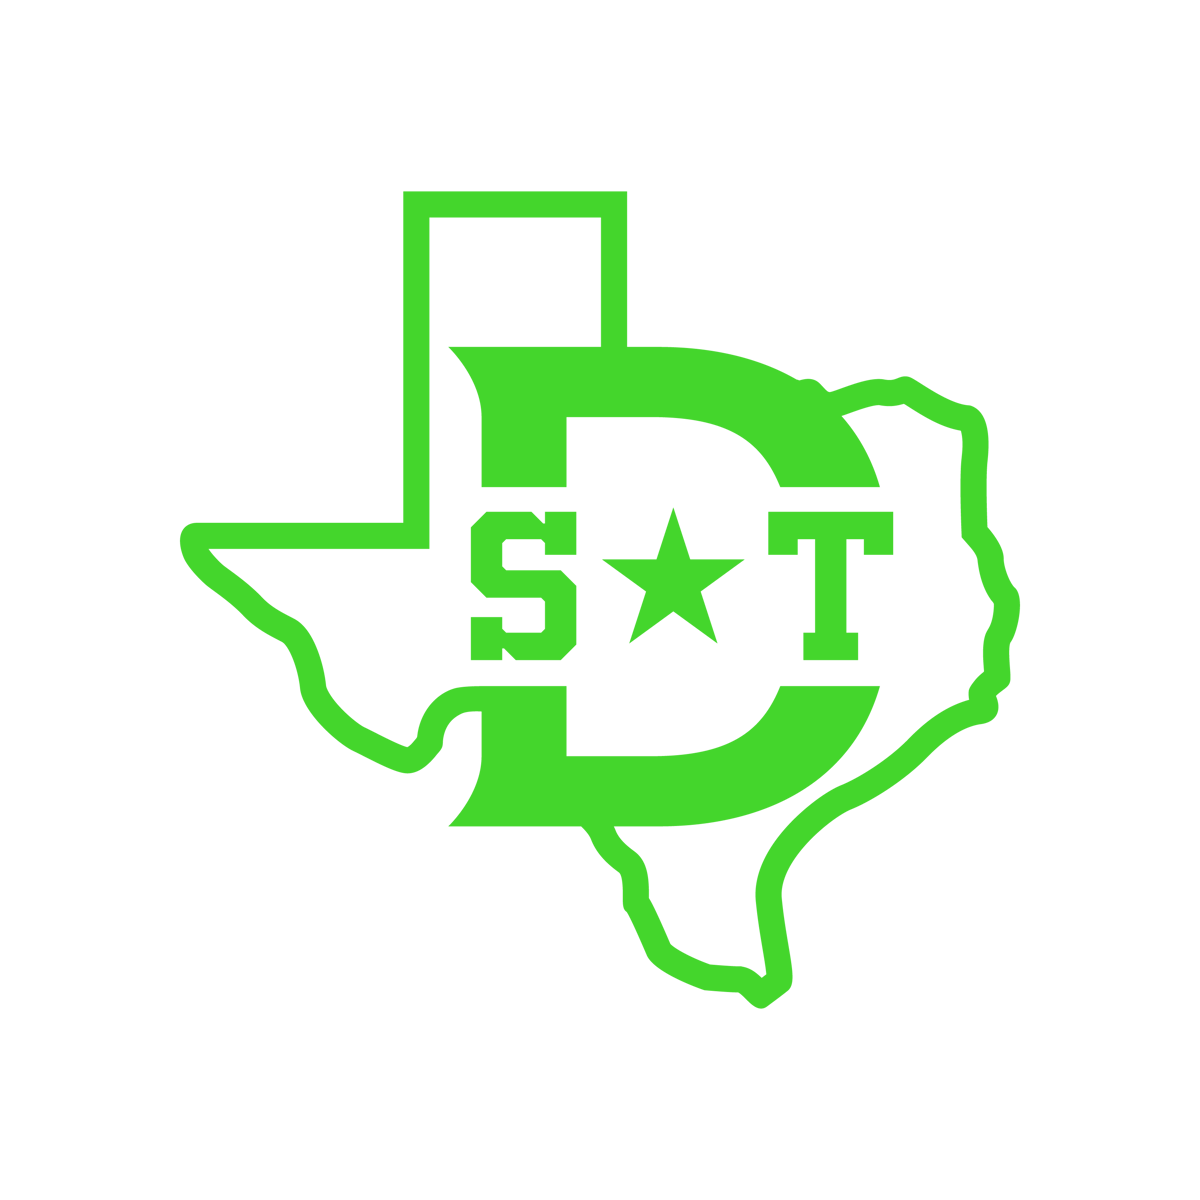 Dallas Stars Tournaments